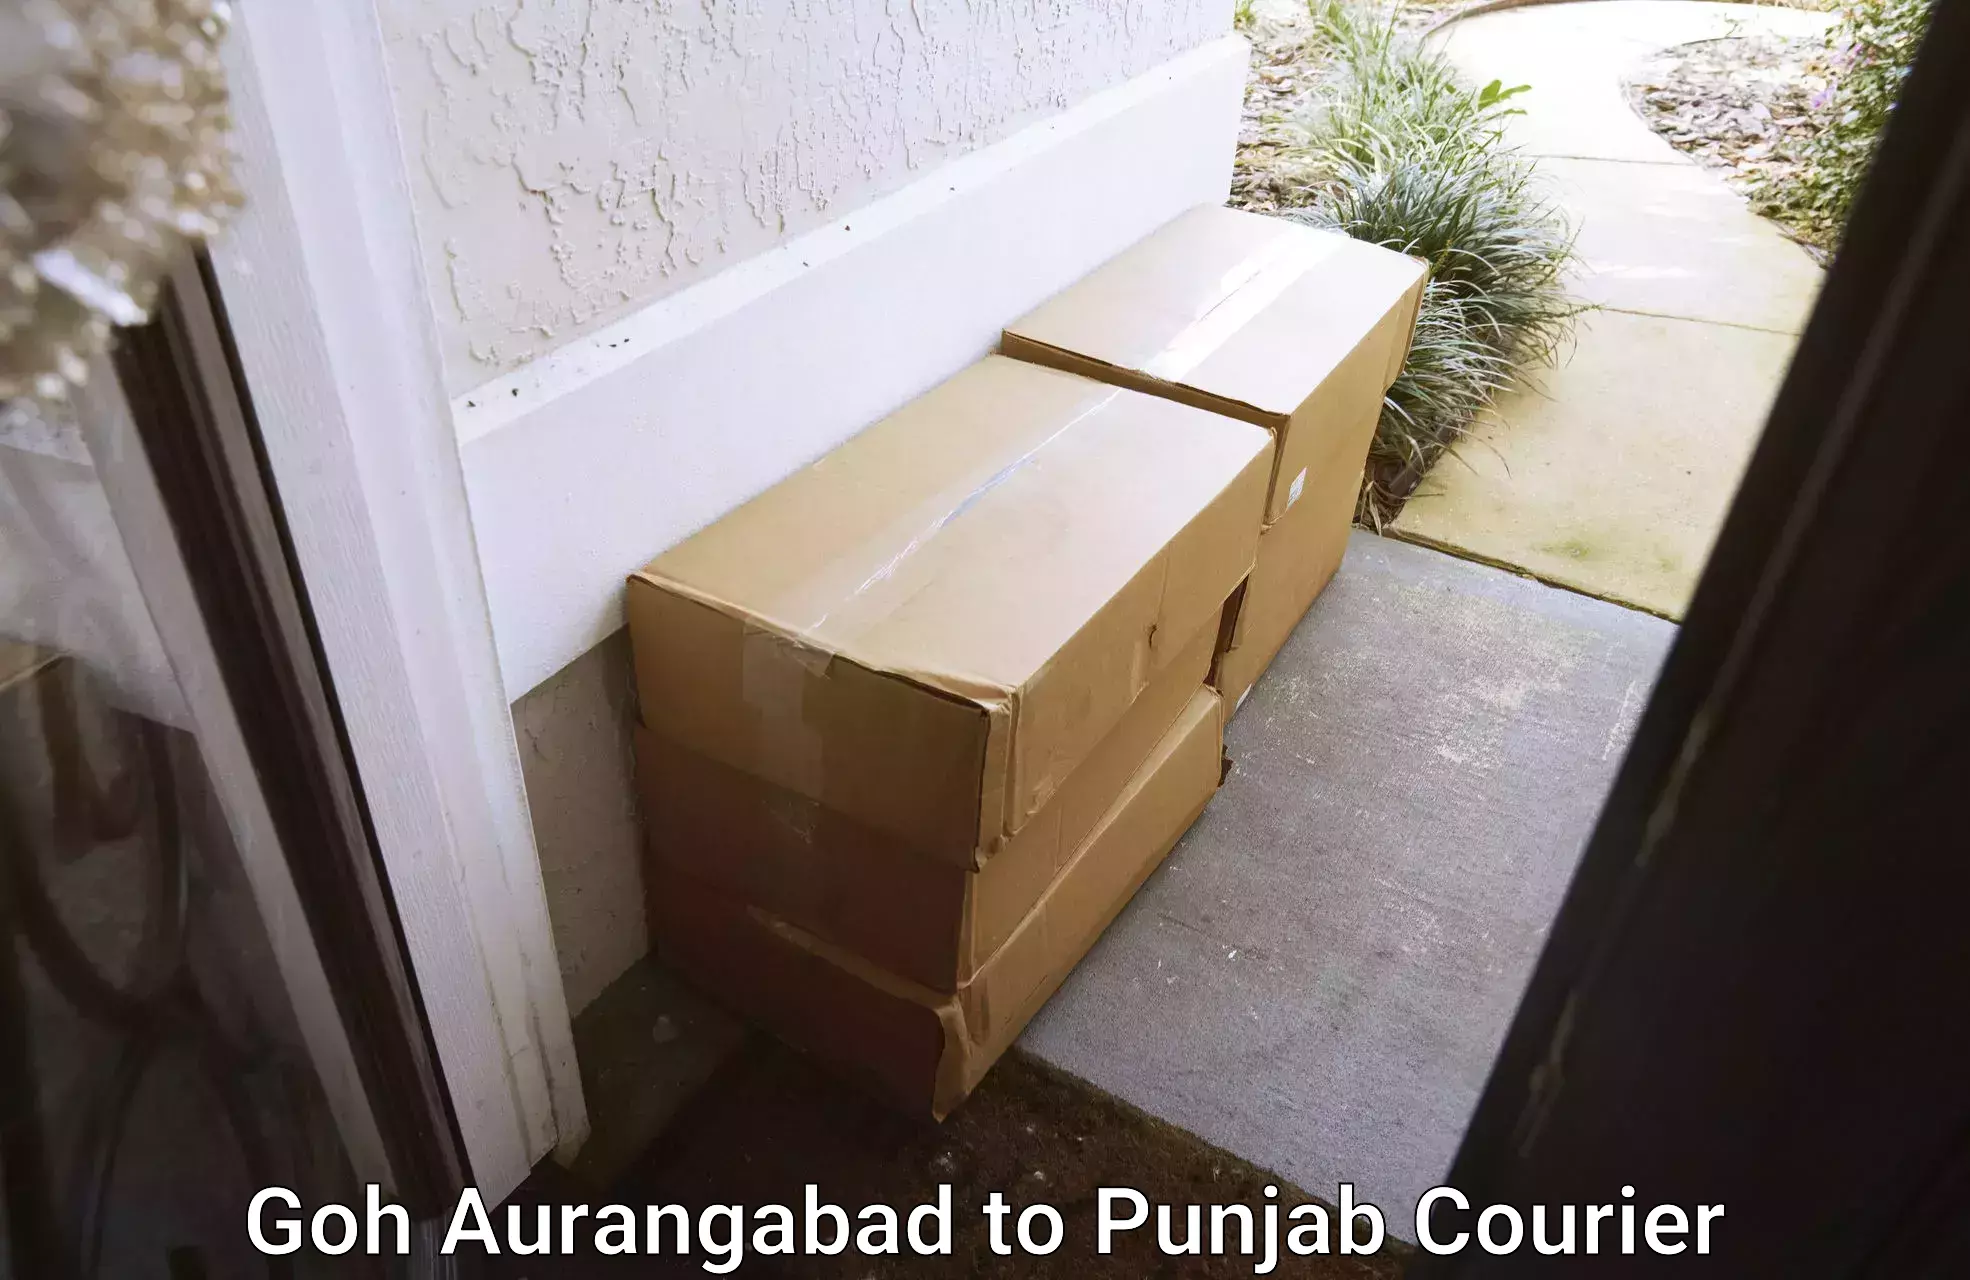 Affordable moving solutions Goh Aurangabad to Punjab